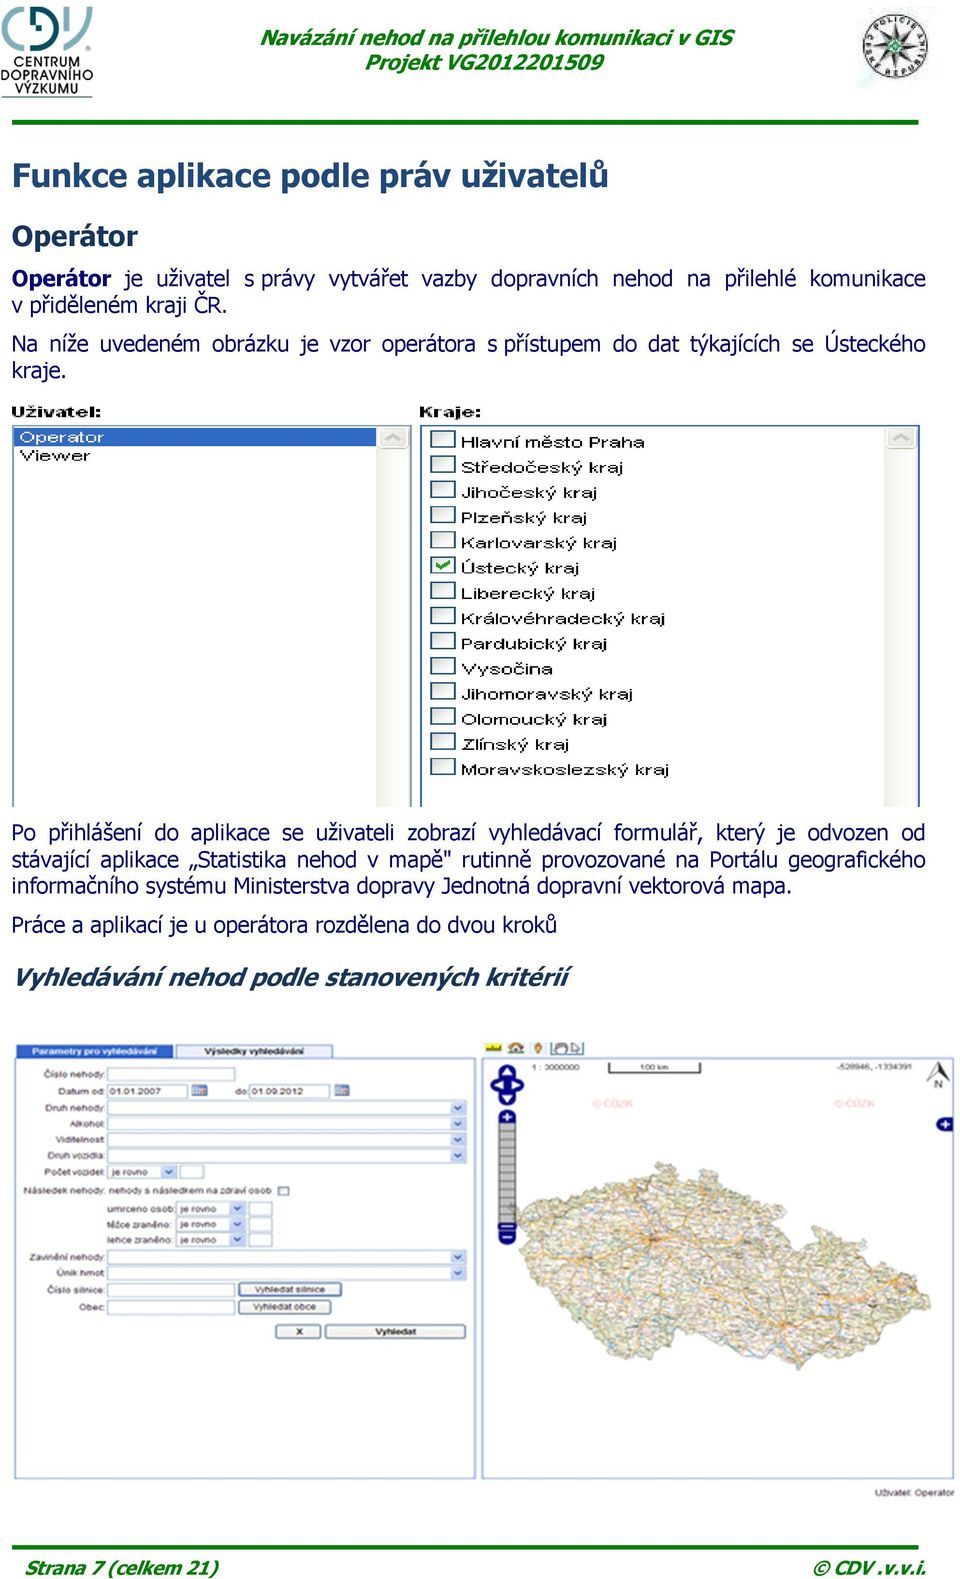 Po přihlášení do aplikace se uživateli zobrazí vyhledávací formulář, který je odvozen od stávající aplikace Statistika nehod v mapě" rutinně provozované na